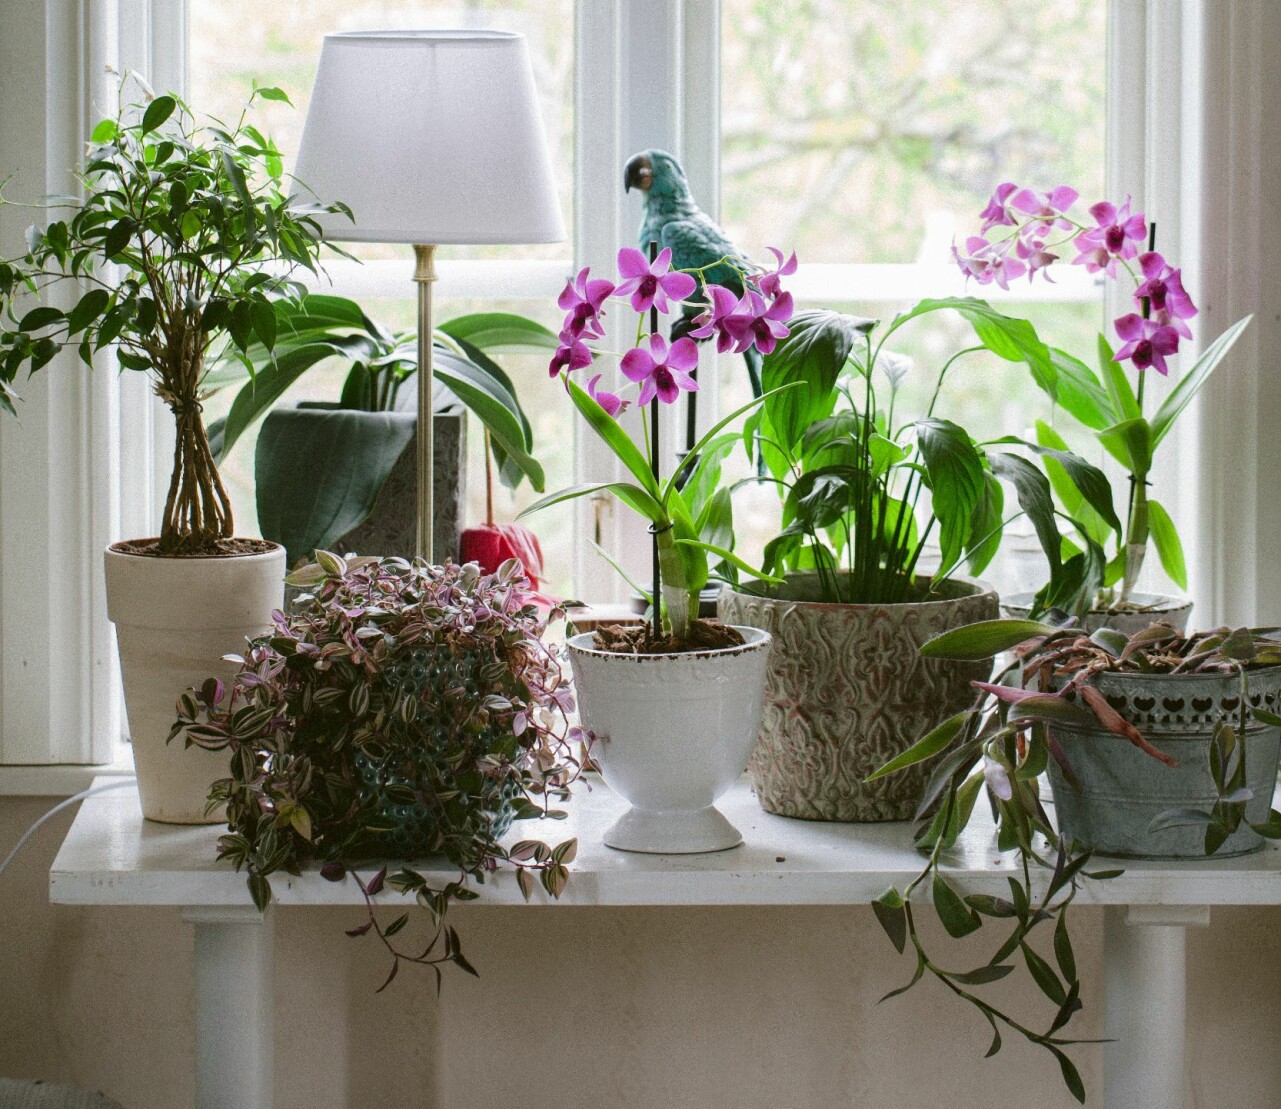 Orkidéer och olika typer av växter i ett fönster.